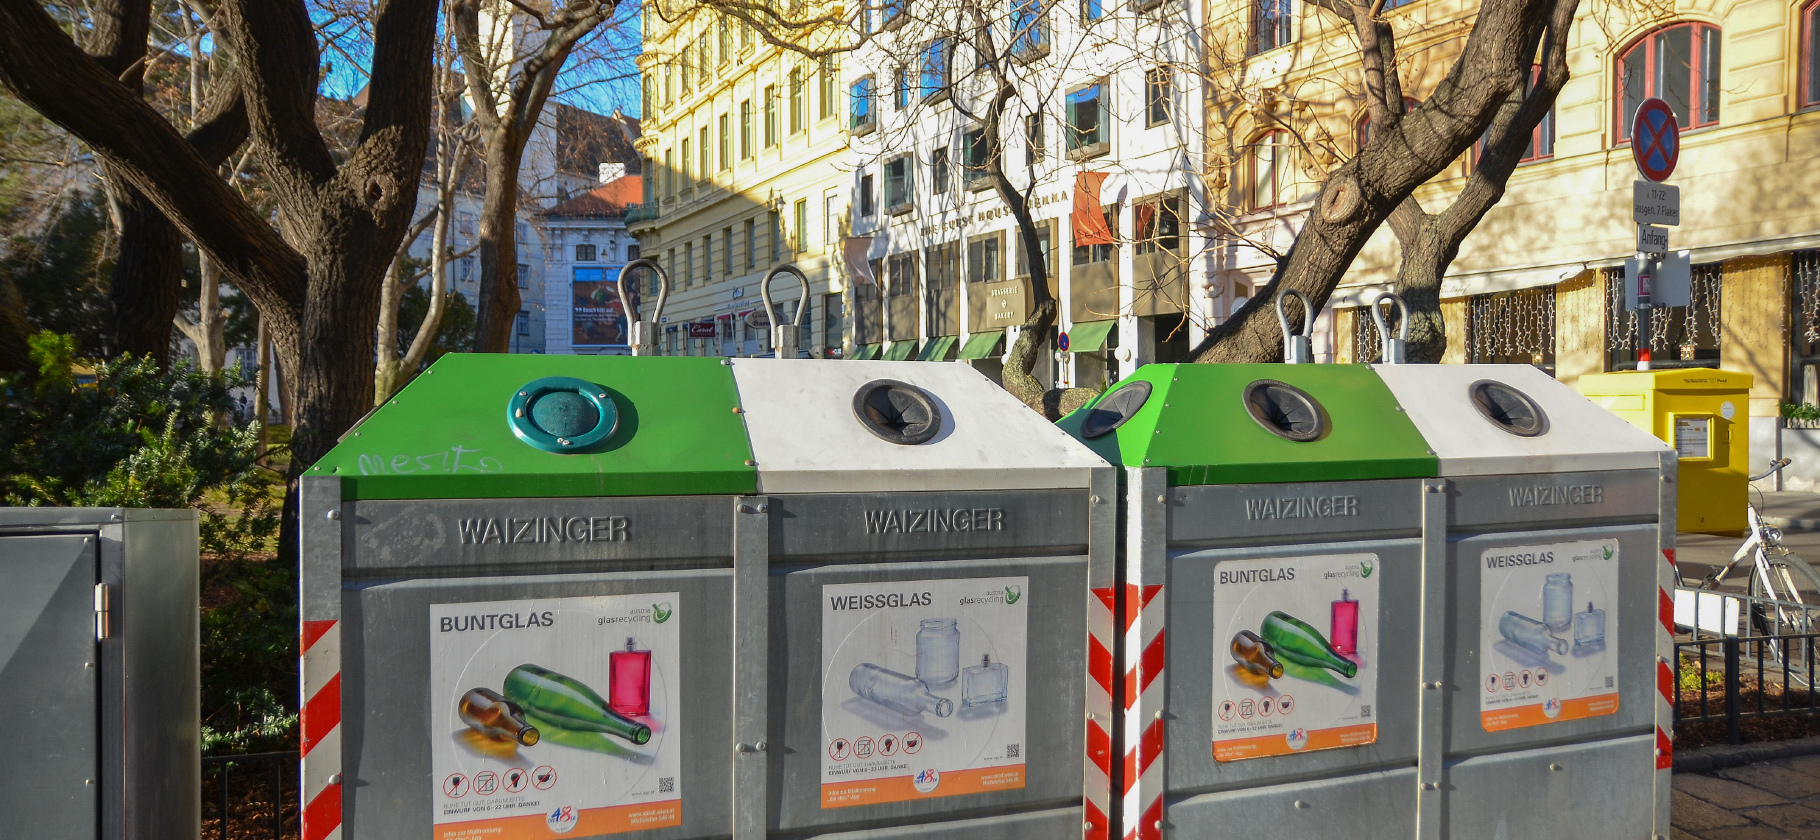 Цветные пакеты, жалобы на нарушителей и штрафы: как устроена сортировка отходов в Европе